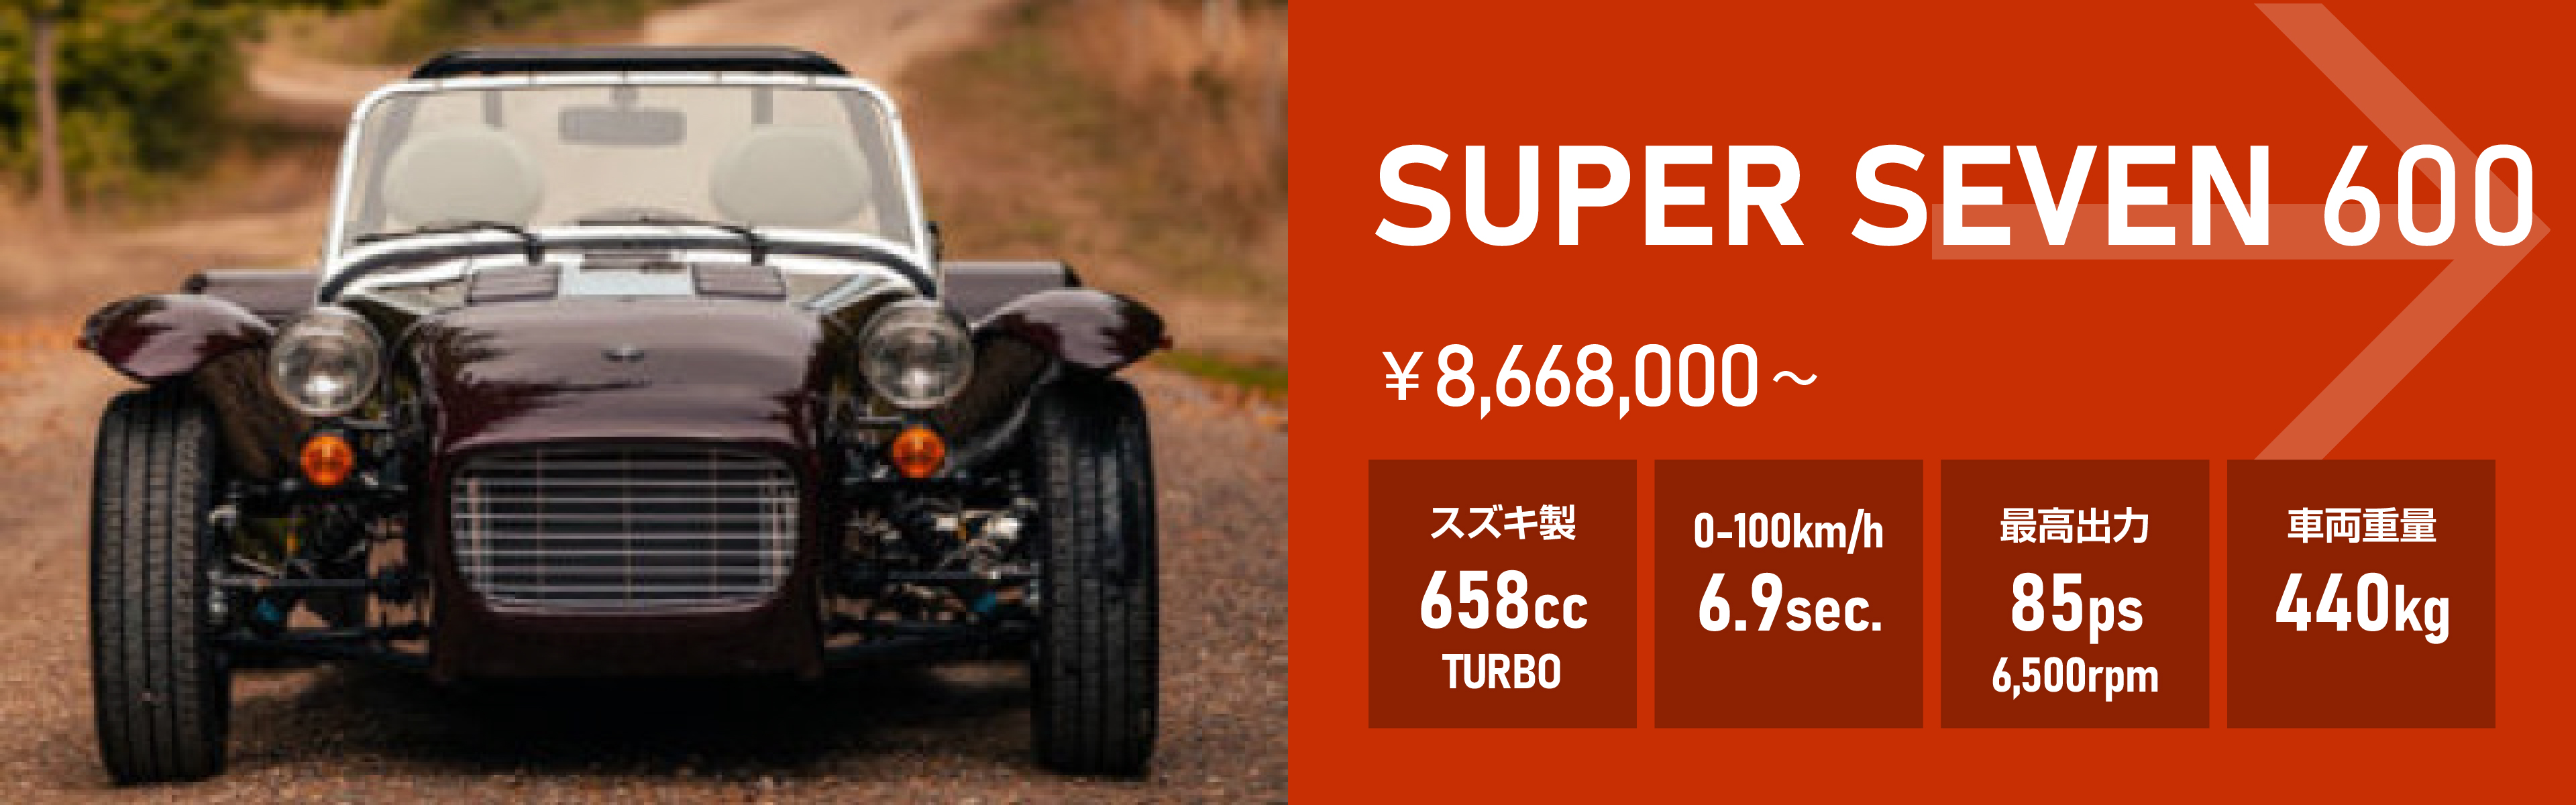 SUPER SEVEN 600